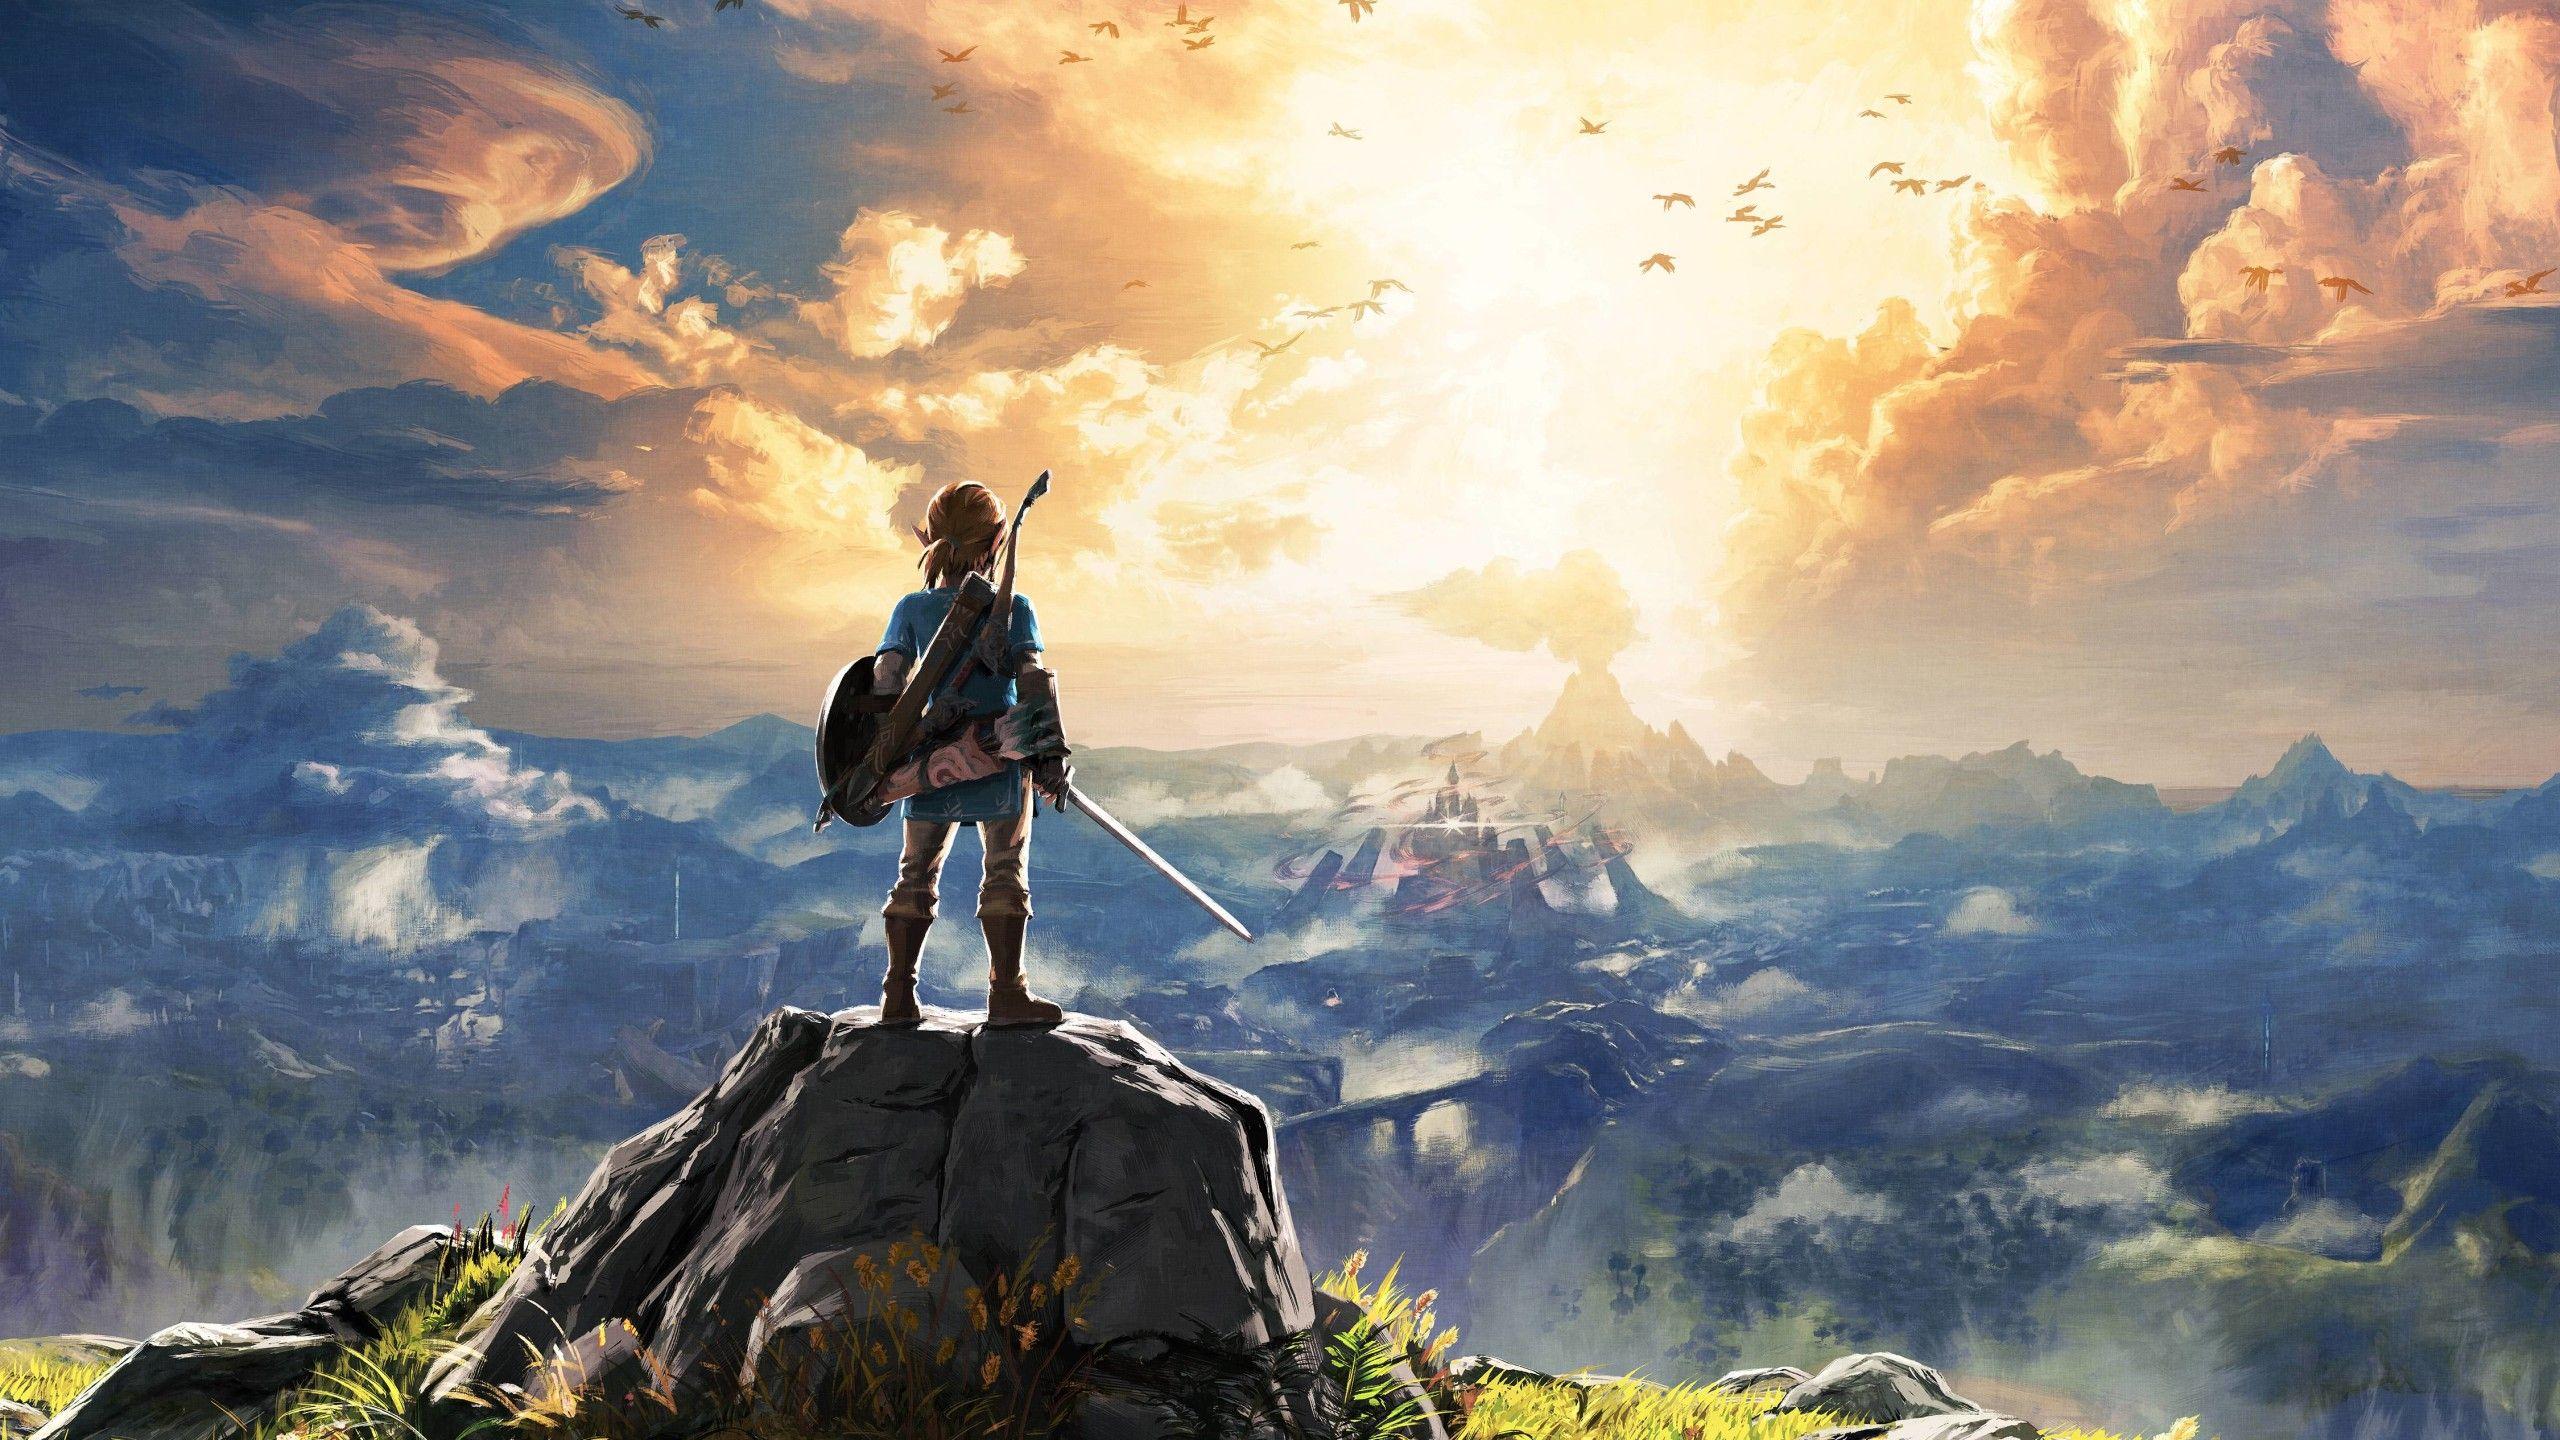 Nếu bạn là fan của game Zelda, thì chắc chắn tấm hình nền Zelda 2560x1440 sẽ khiến bạn vô cùng thích thú. Hãy cùng chiêm ngưỡng hình ảnh trang trí Desktop đầy màu sắc và độc đáo này, và để chúng ta cùng ngắm nhìn thế giới đầy mê hoặc của Link cùng những đồng minh của mình.